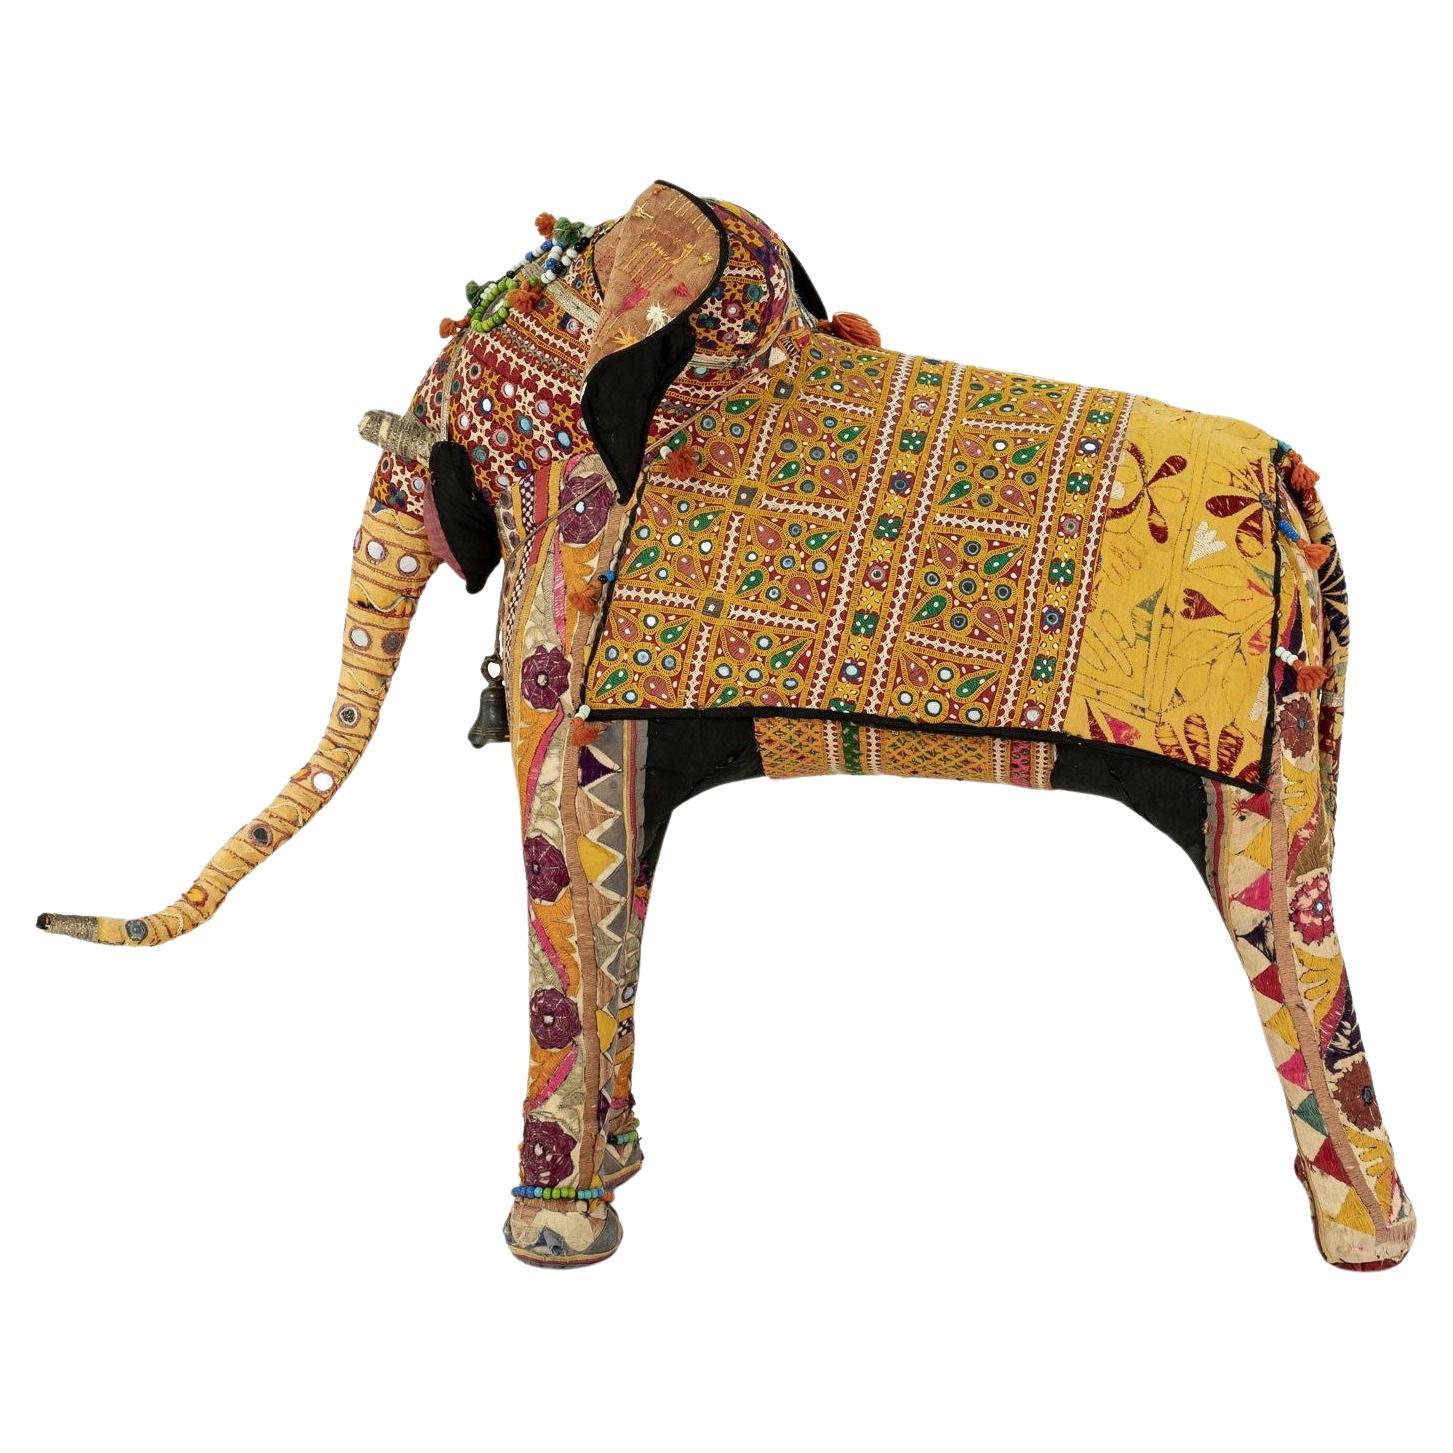 Massives Elefantenkleid aus Baumwolle im Vintage-Stil mit indischen Textilien bezogen